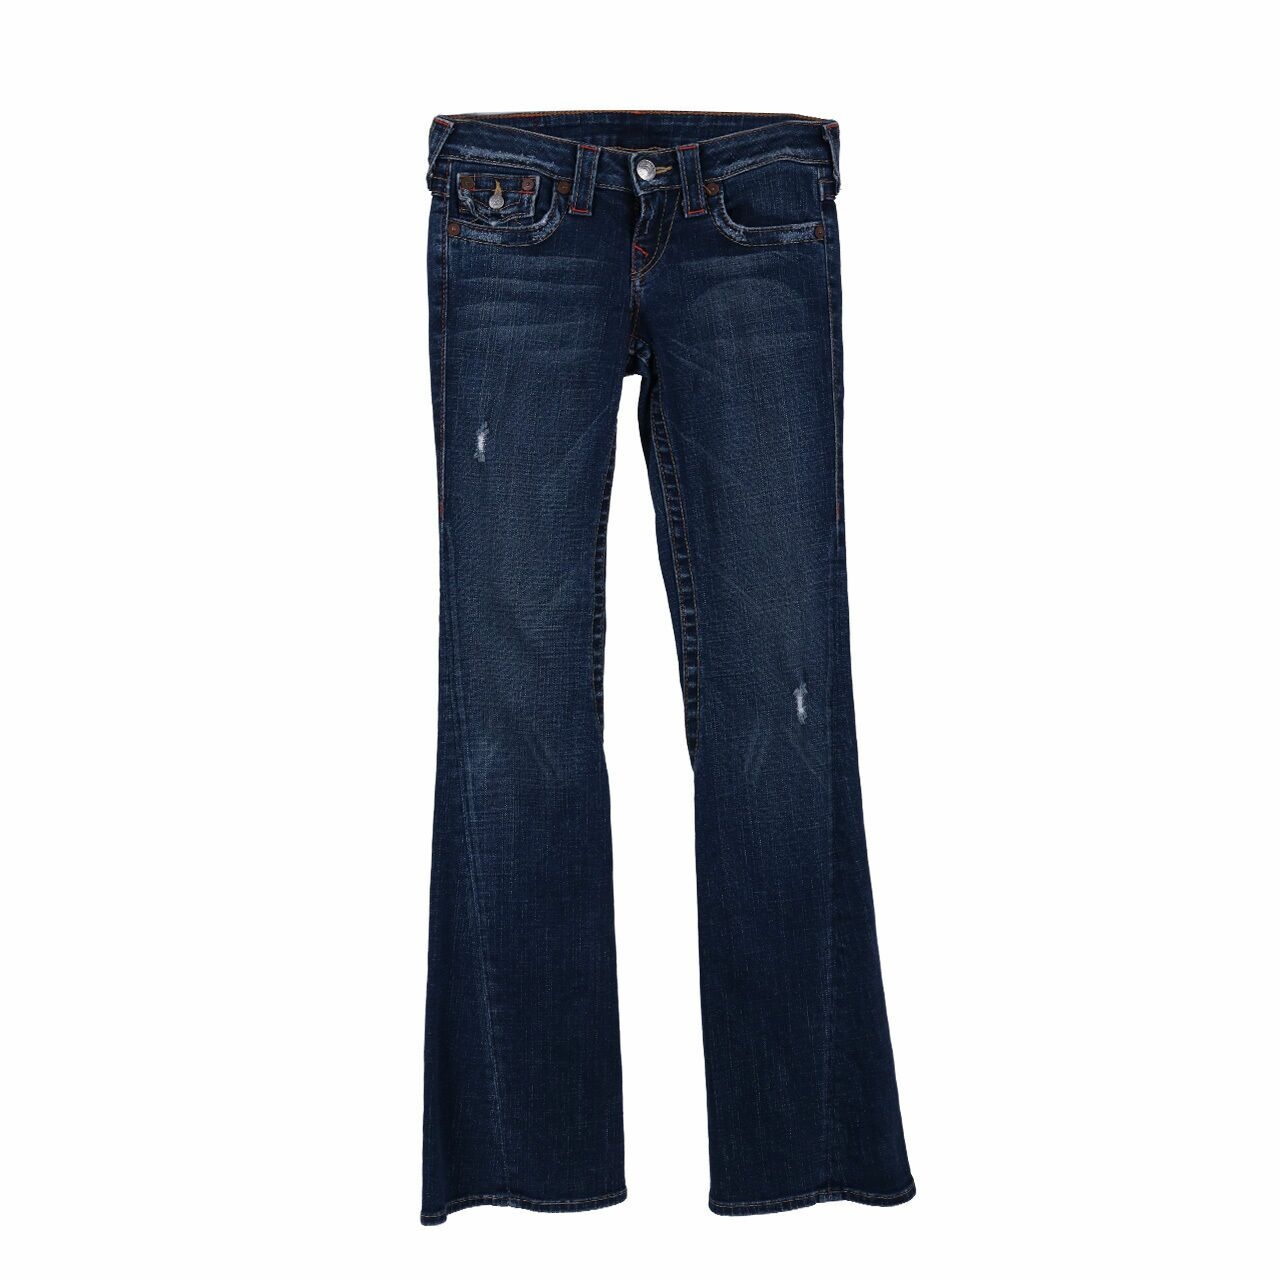 True Religion Blue Jeans Long Pants